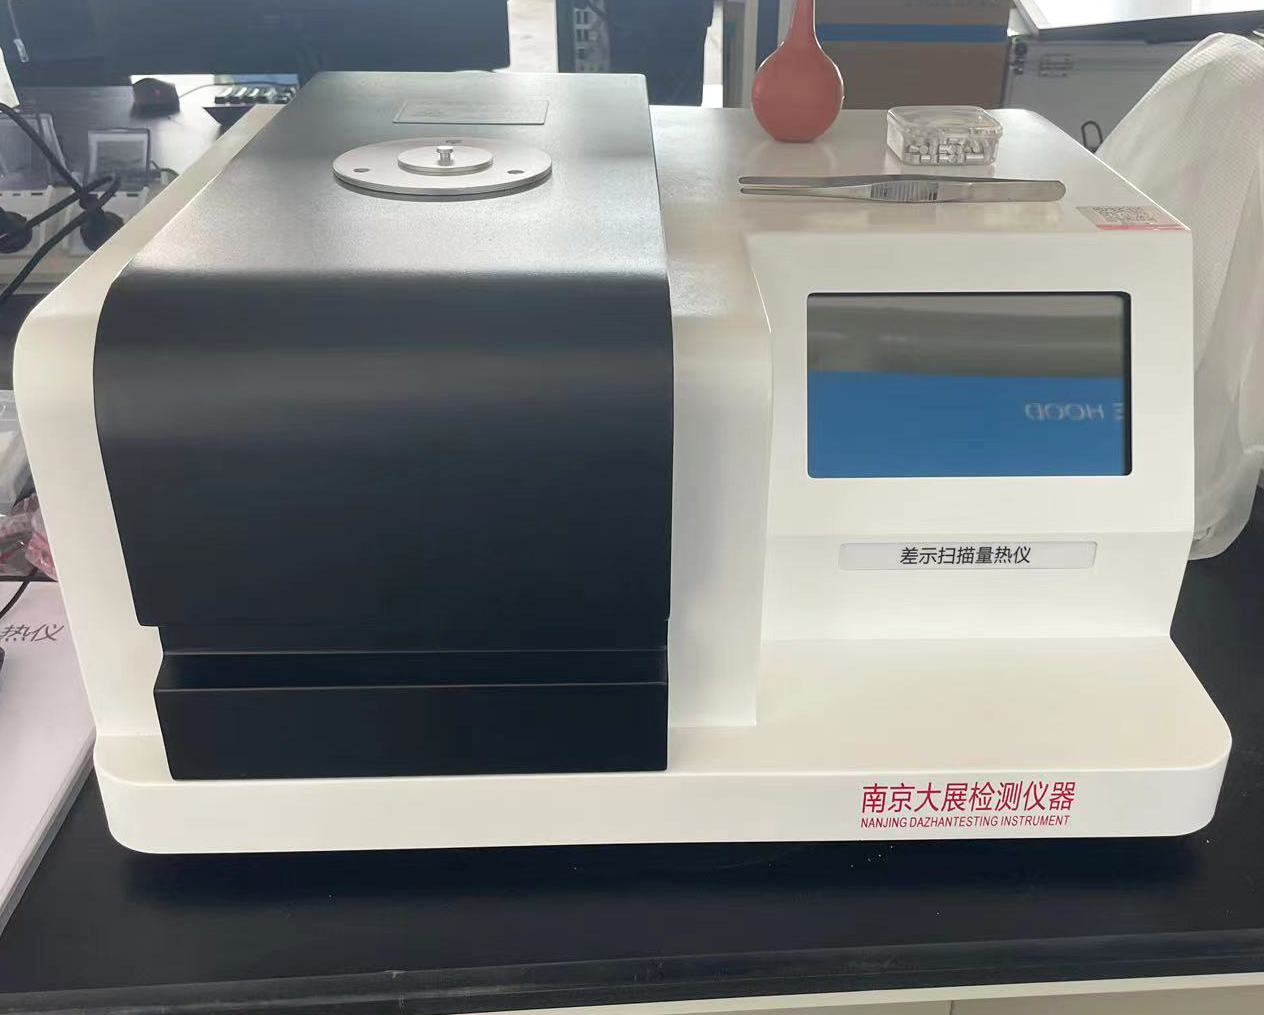 日丰集团采购多台南京大展的热分析仪器